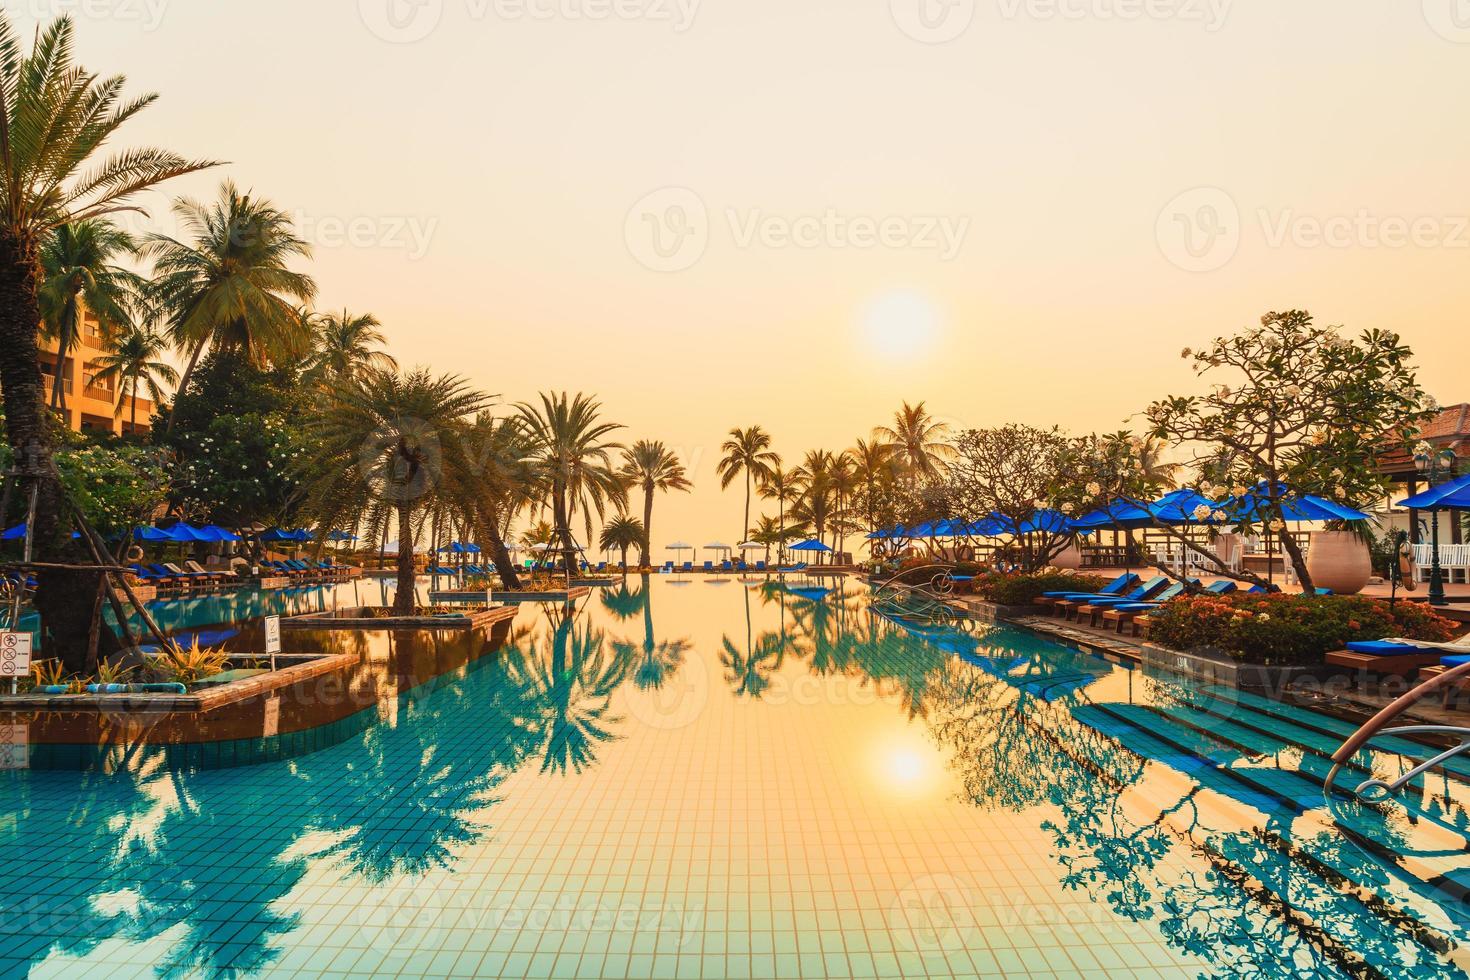 Palmera con sombrilla piscina en hotel resort de lujo al amanecer. foto